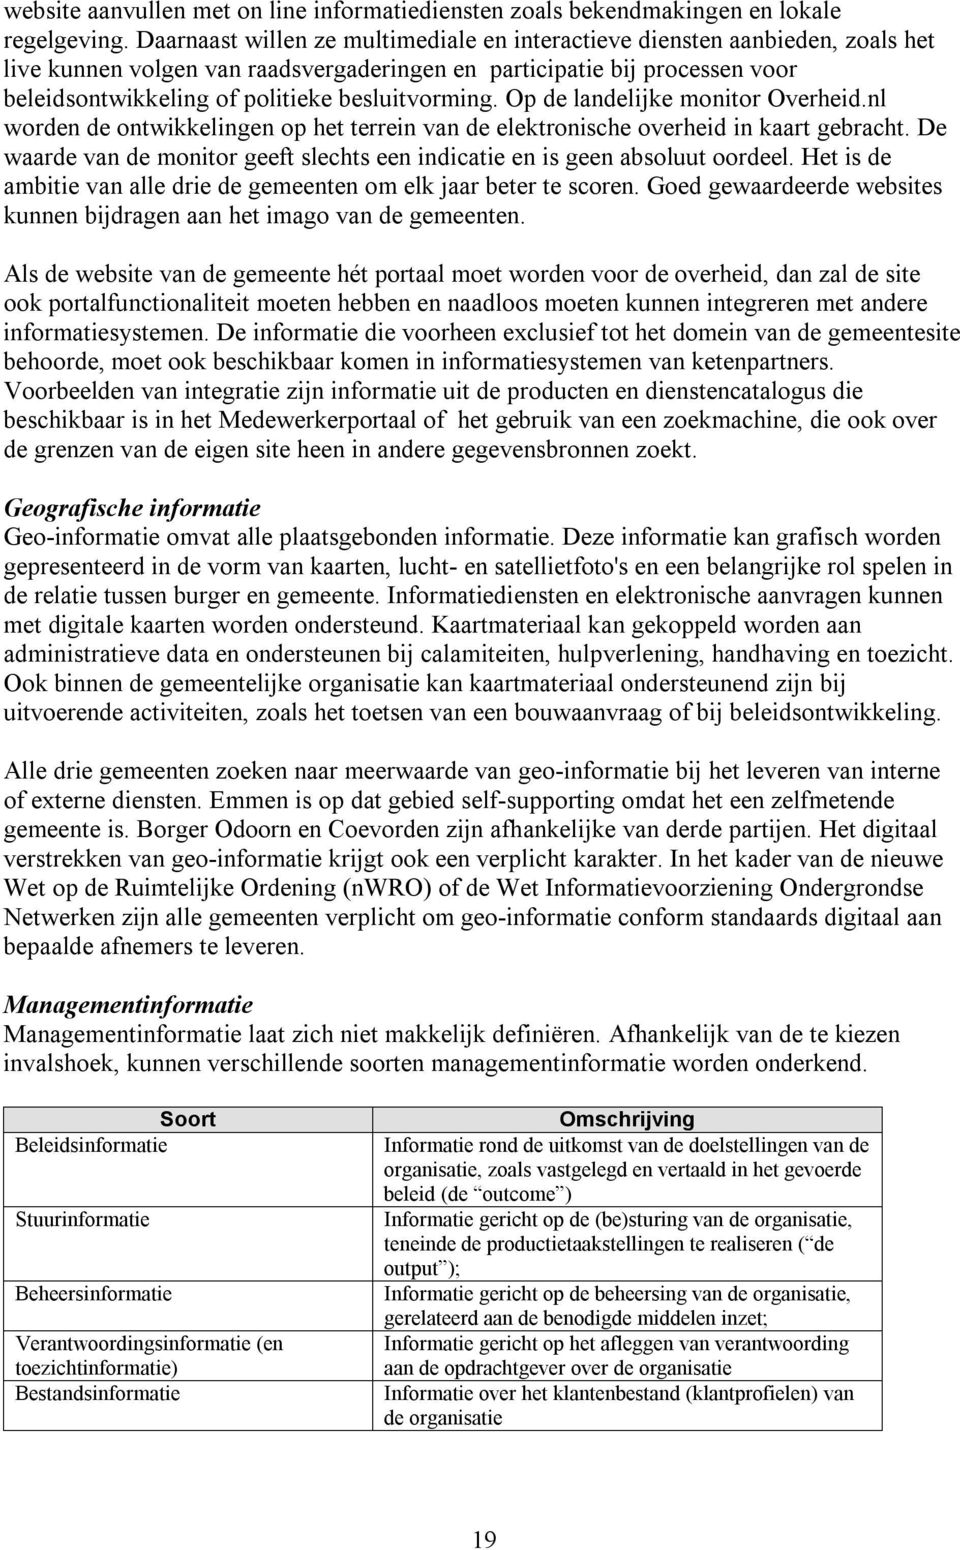 besluitvorming. Op de landelijke monitor Overheid.nl worden de ontwikkelingen op het terrein van de elektronische overheid in kaart gebracht.